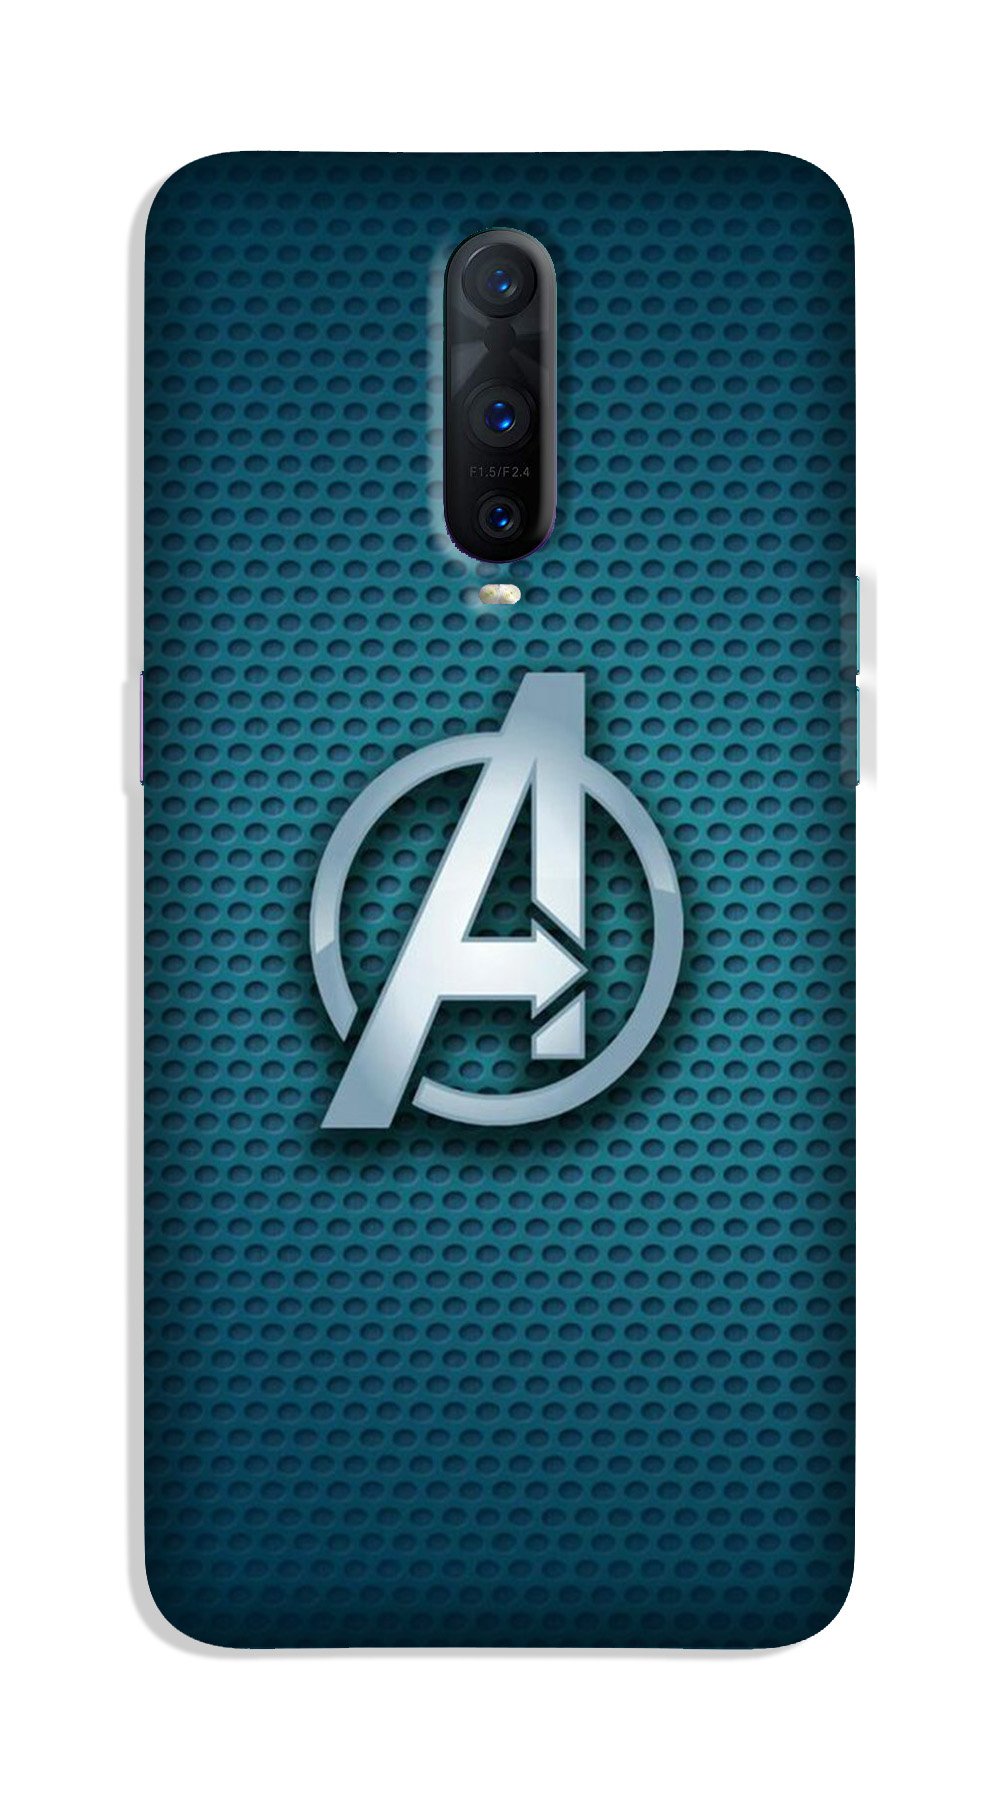 Avengers Case for Oppo R17 Pro (Design No. 246)